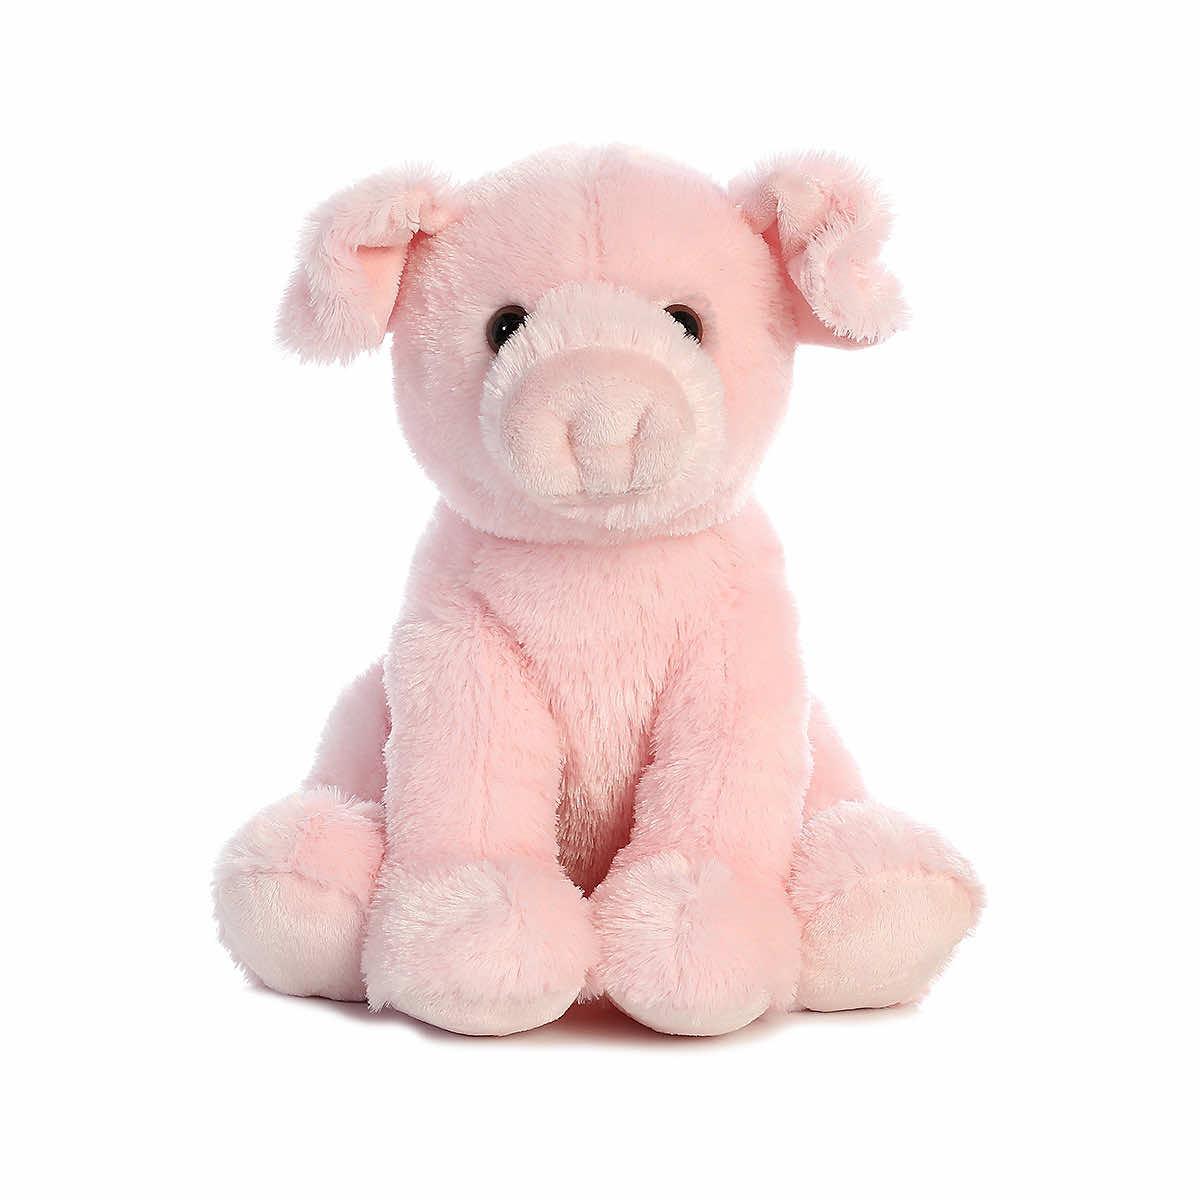  Pink Pig Plush Toy